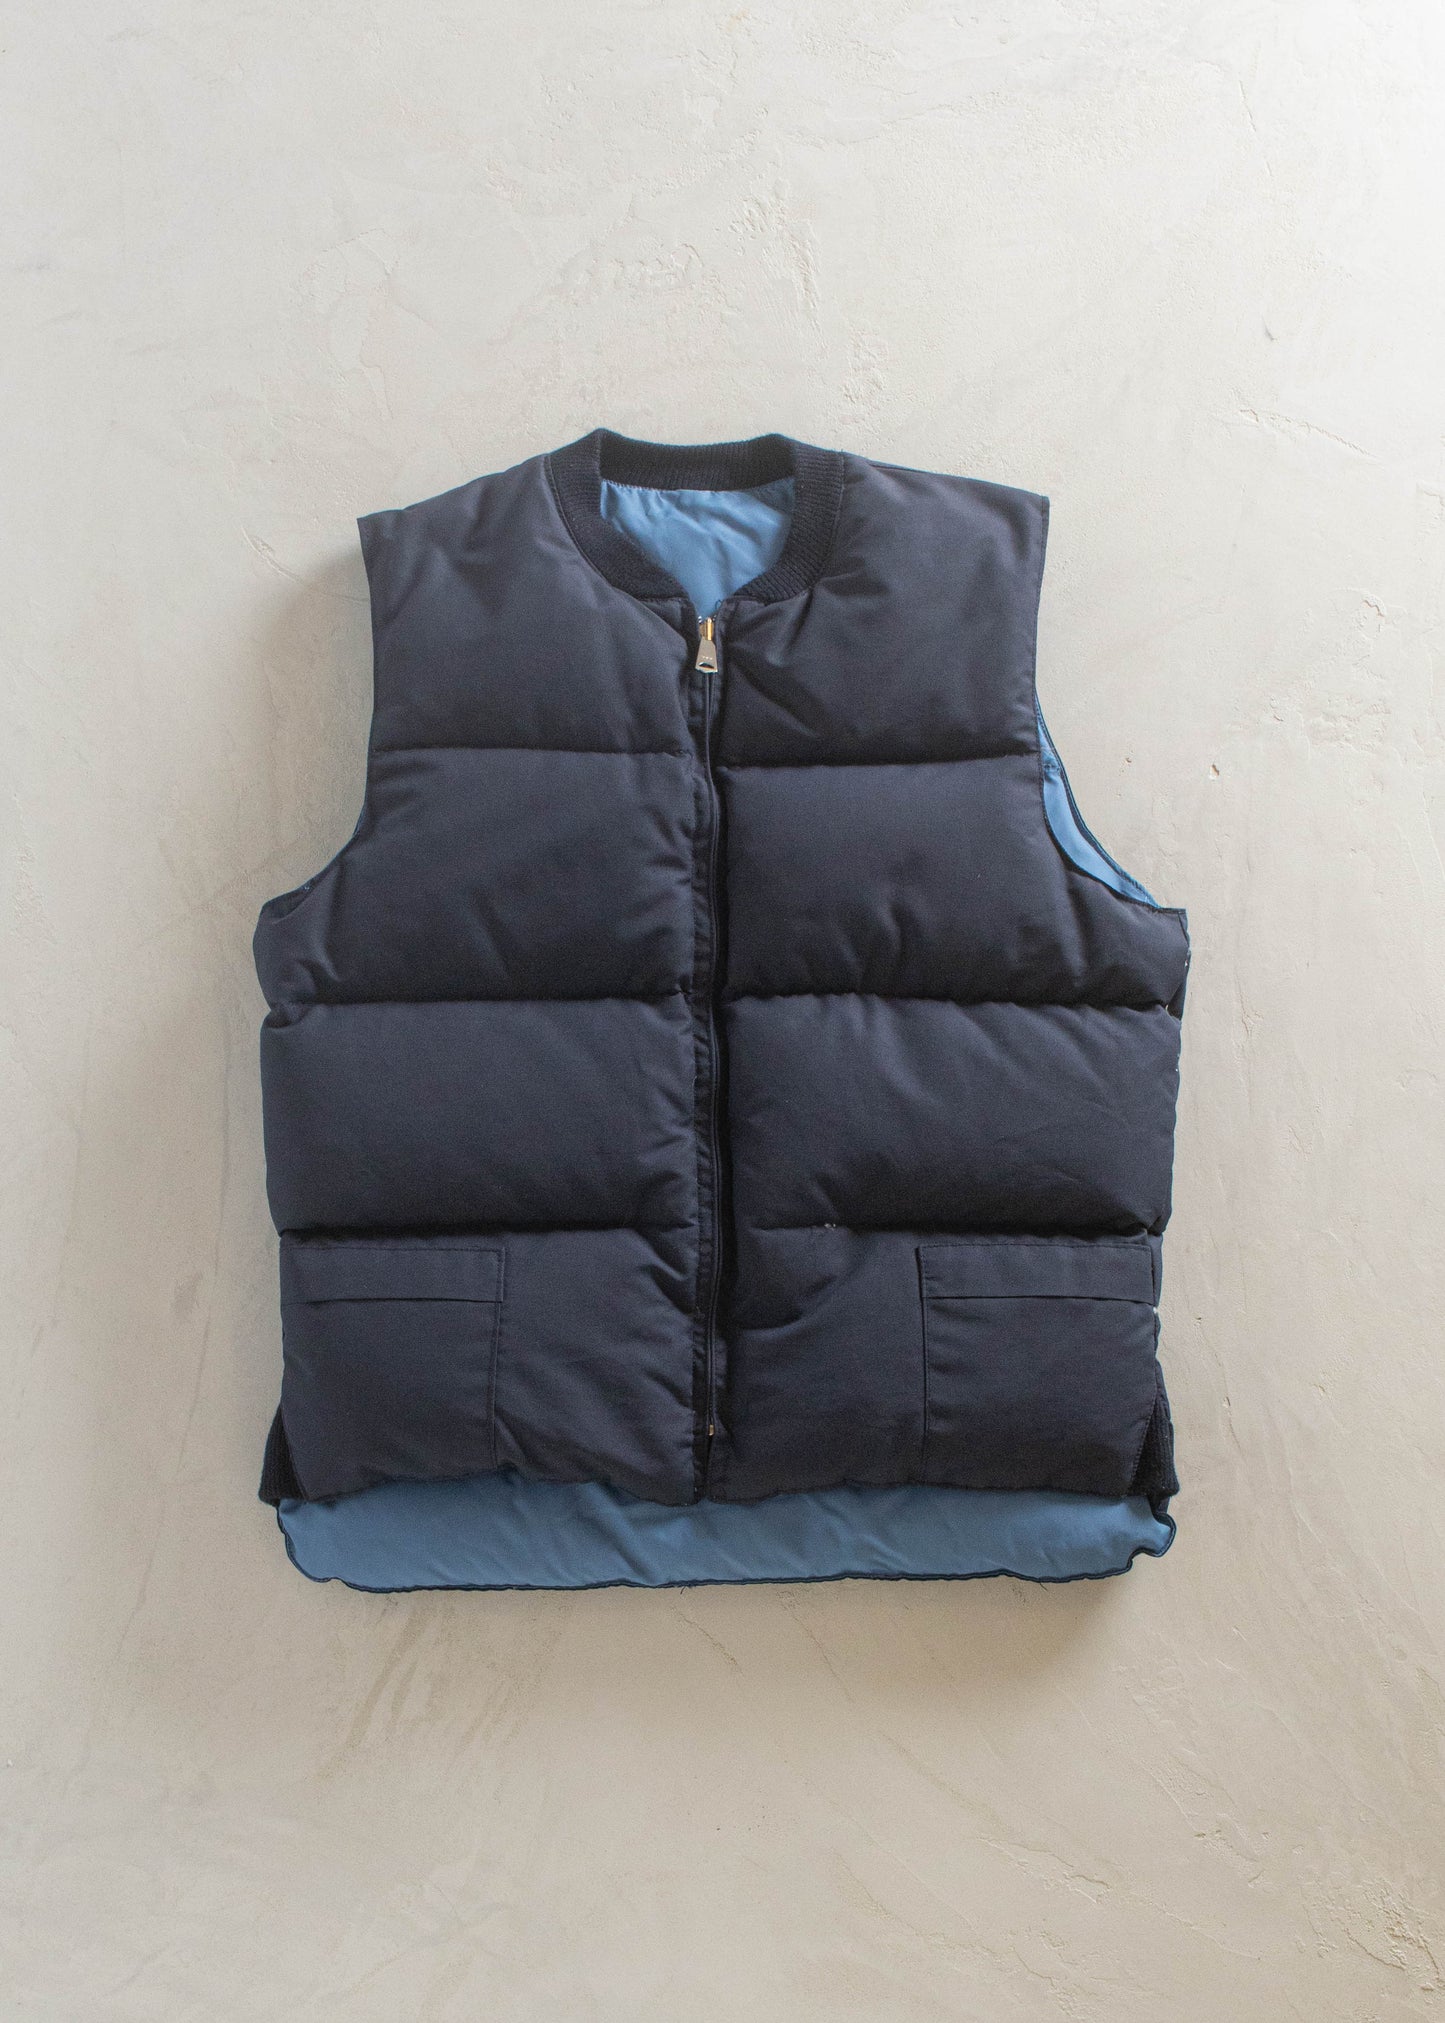 1990s Reversible Down Vest Size L/XL